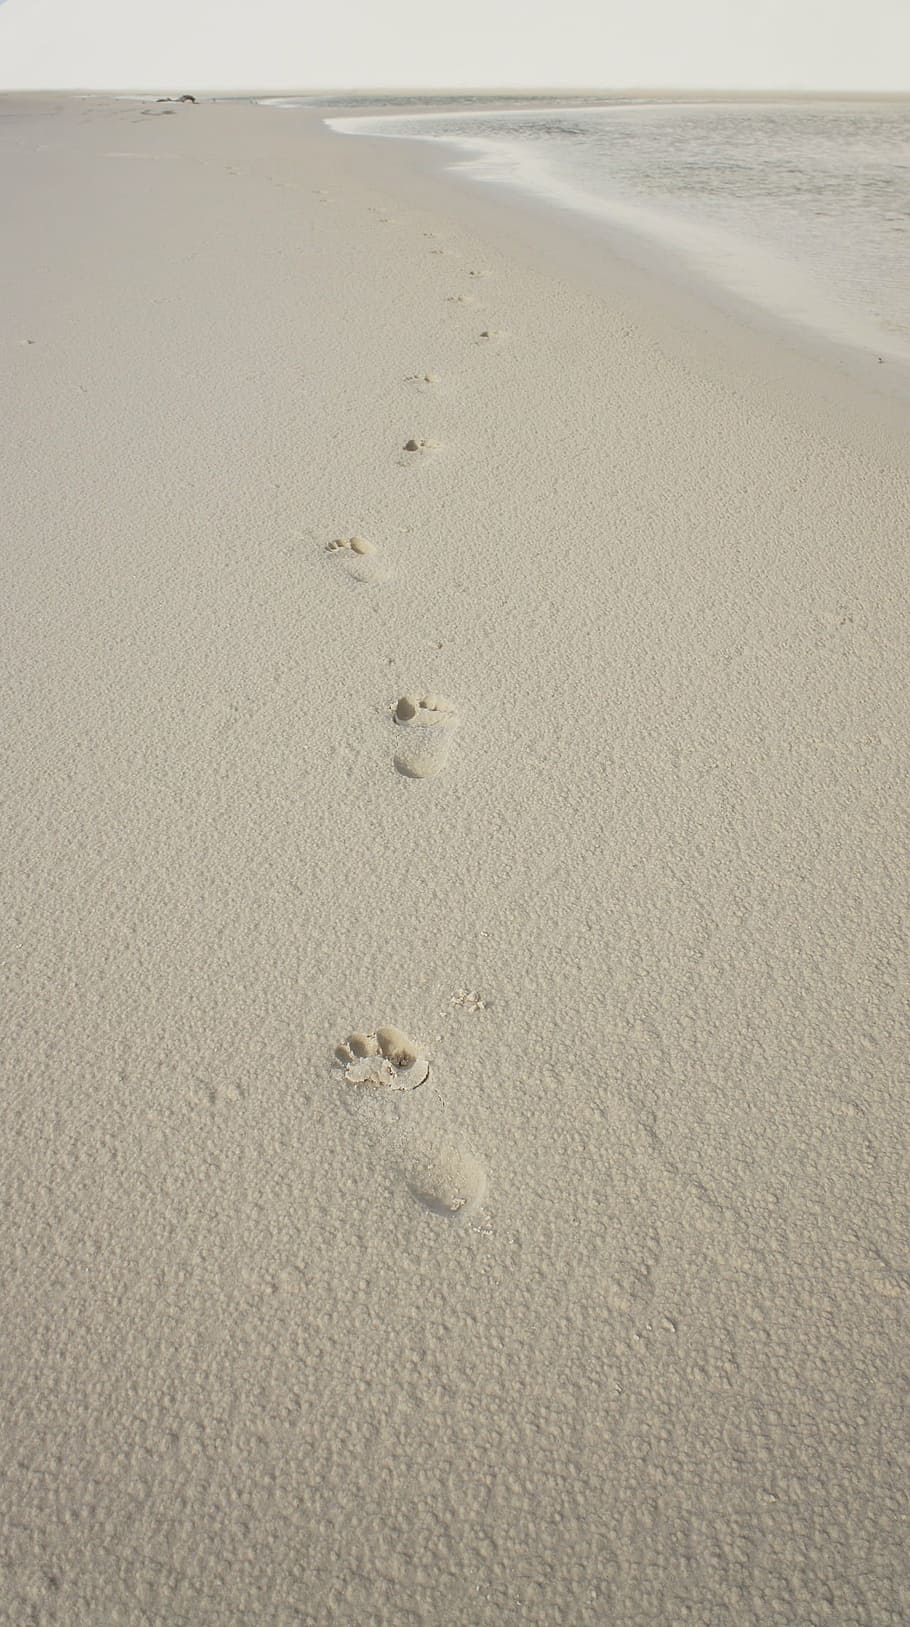 footprints, sand, foot, beira mar, beach, land, footprint, track - imprint, water, sea